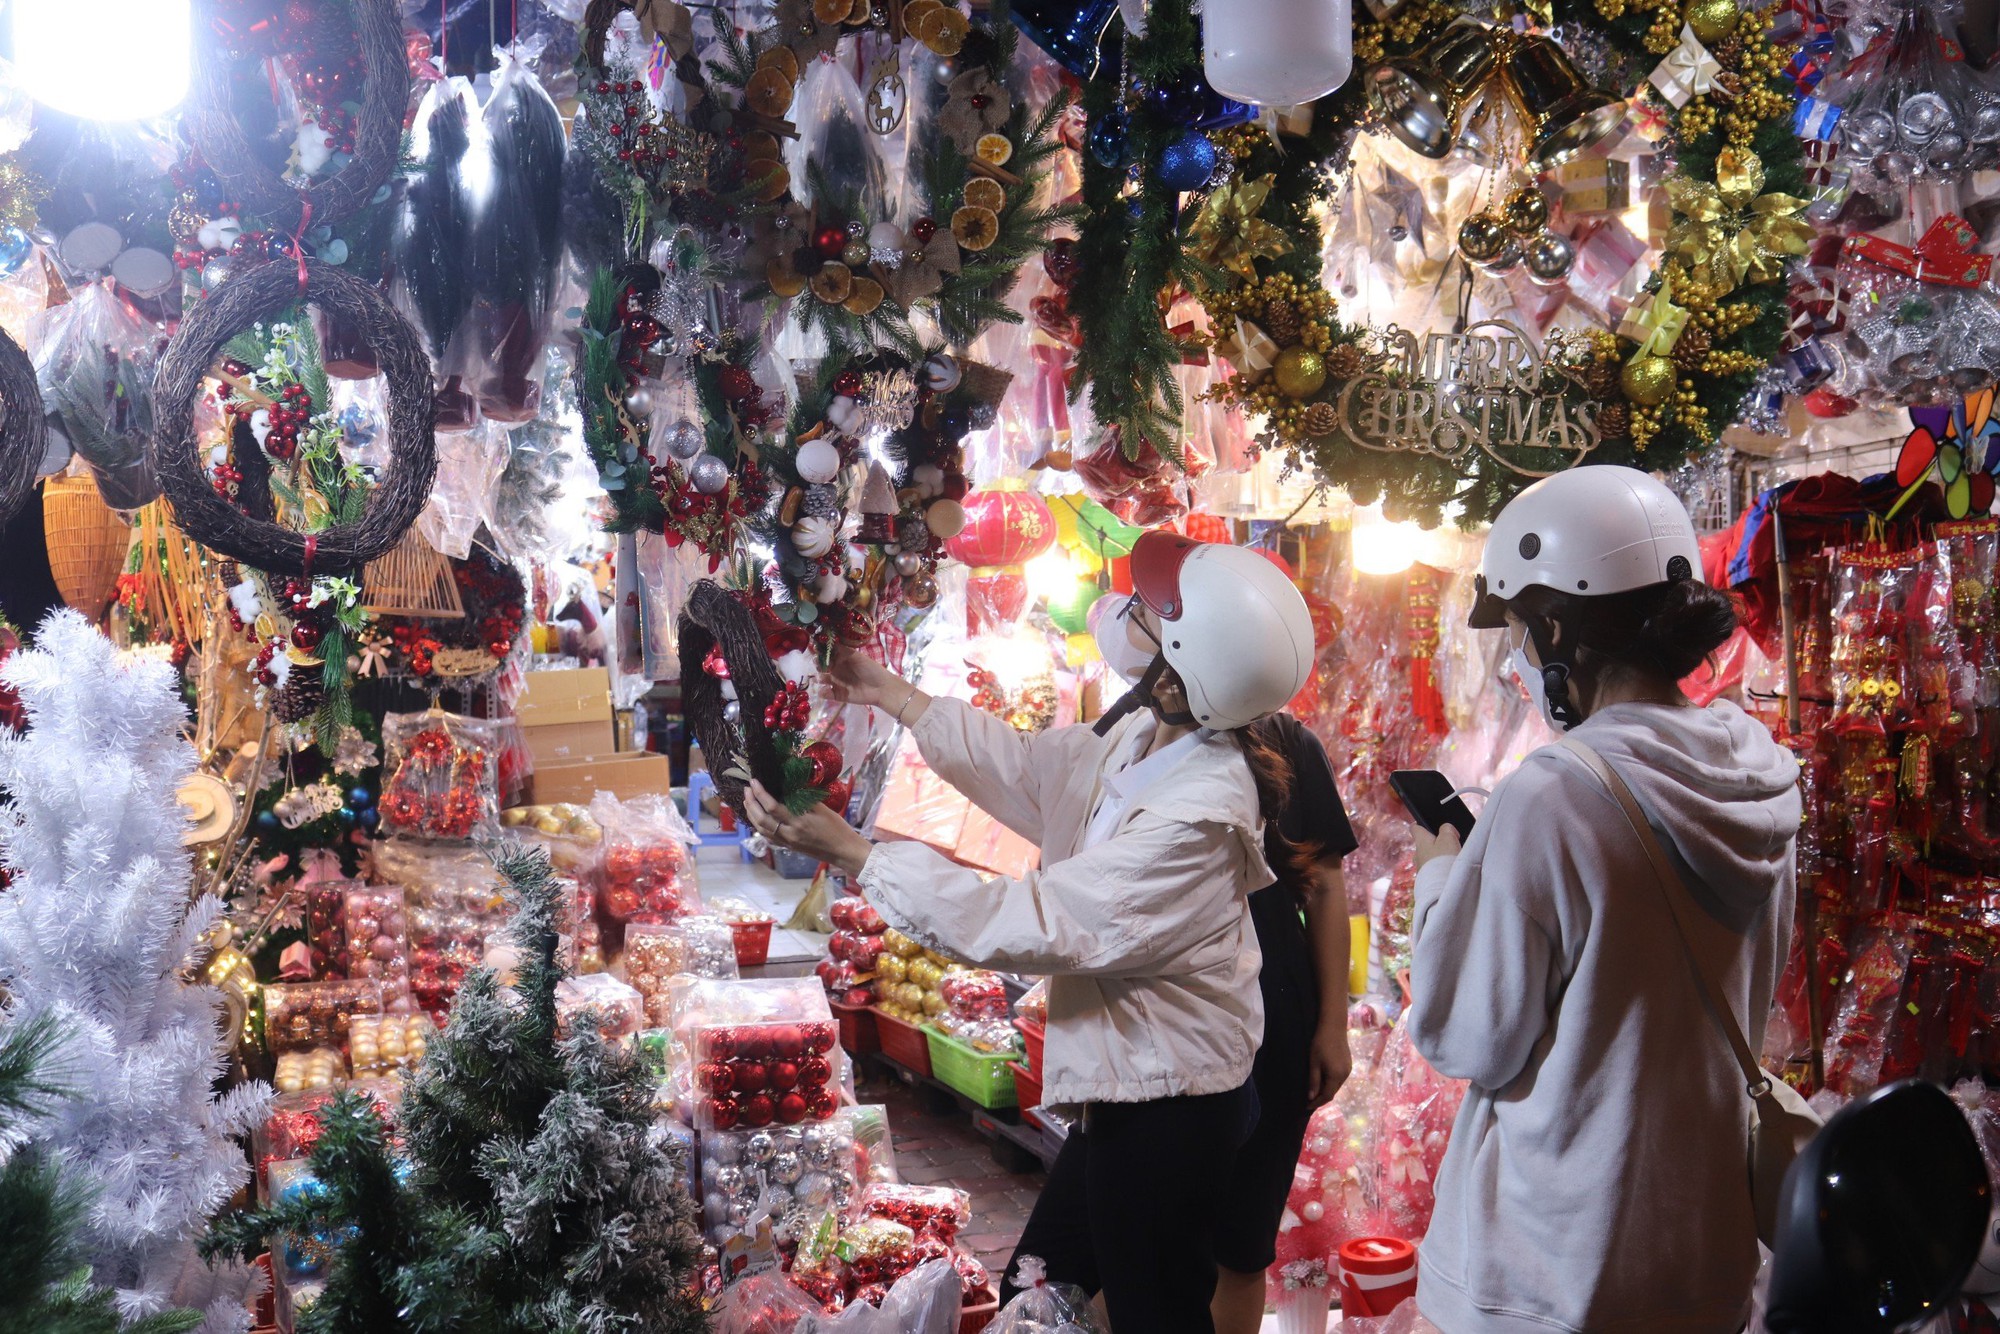 Người dân mua sắm Giáng sinh sớm, chợ đồ trang trí lớn nhất Sài Gòn sáng đèn từ đầu tháng 11 - Ảnh 1.